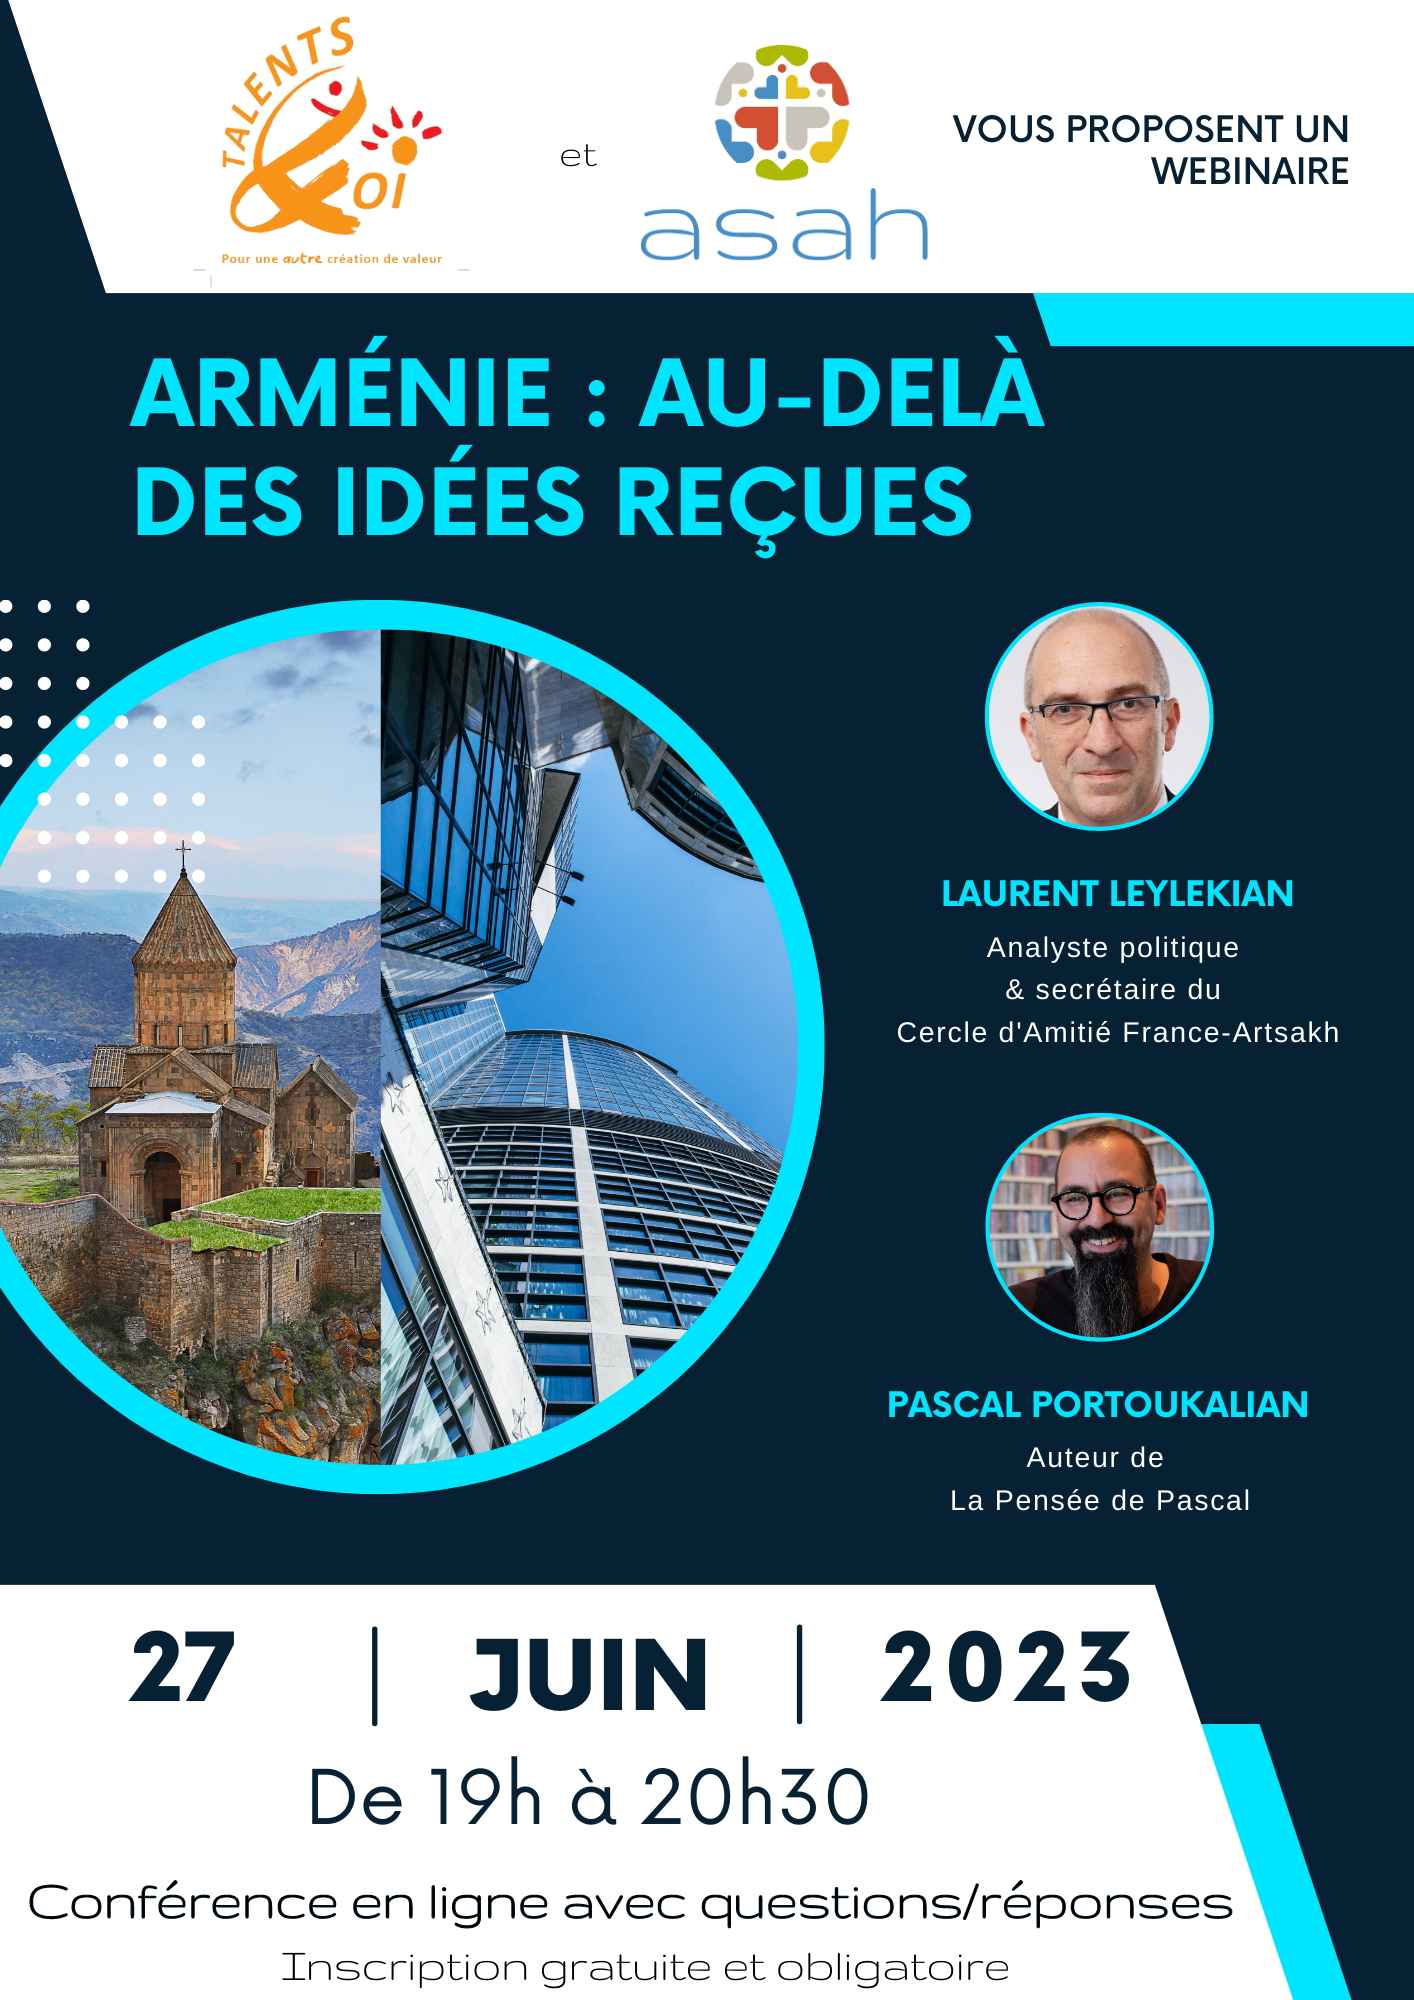 Invito a un webinar: Armenia, oltre le idee ricevute